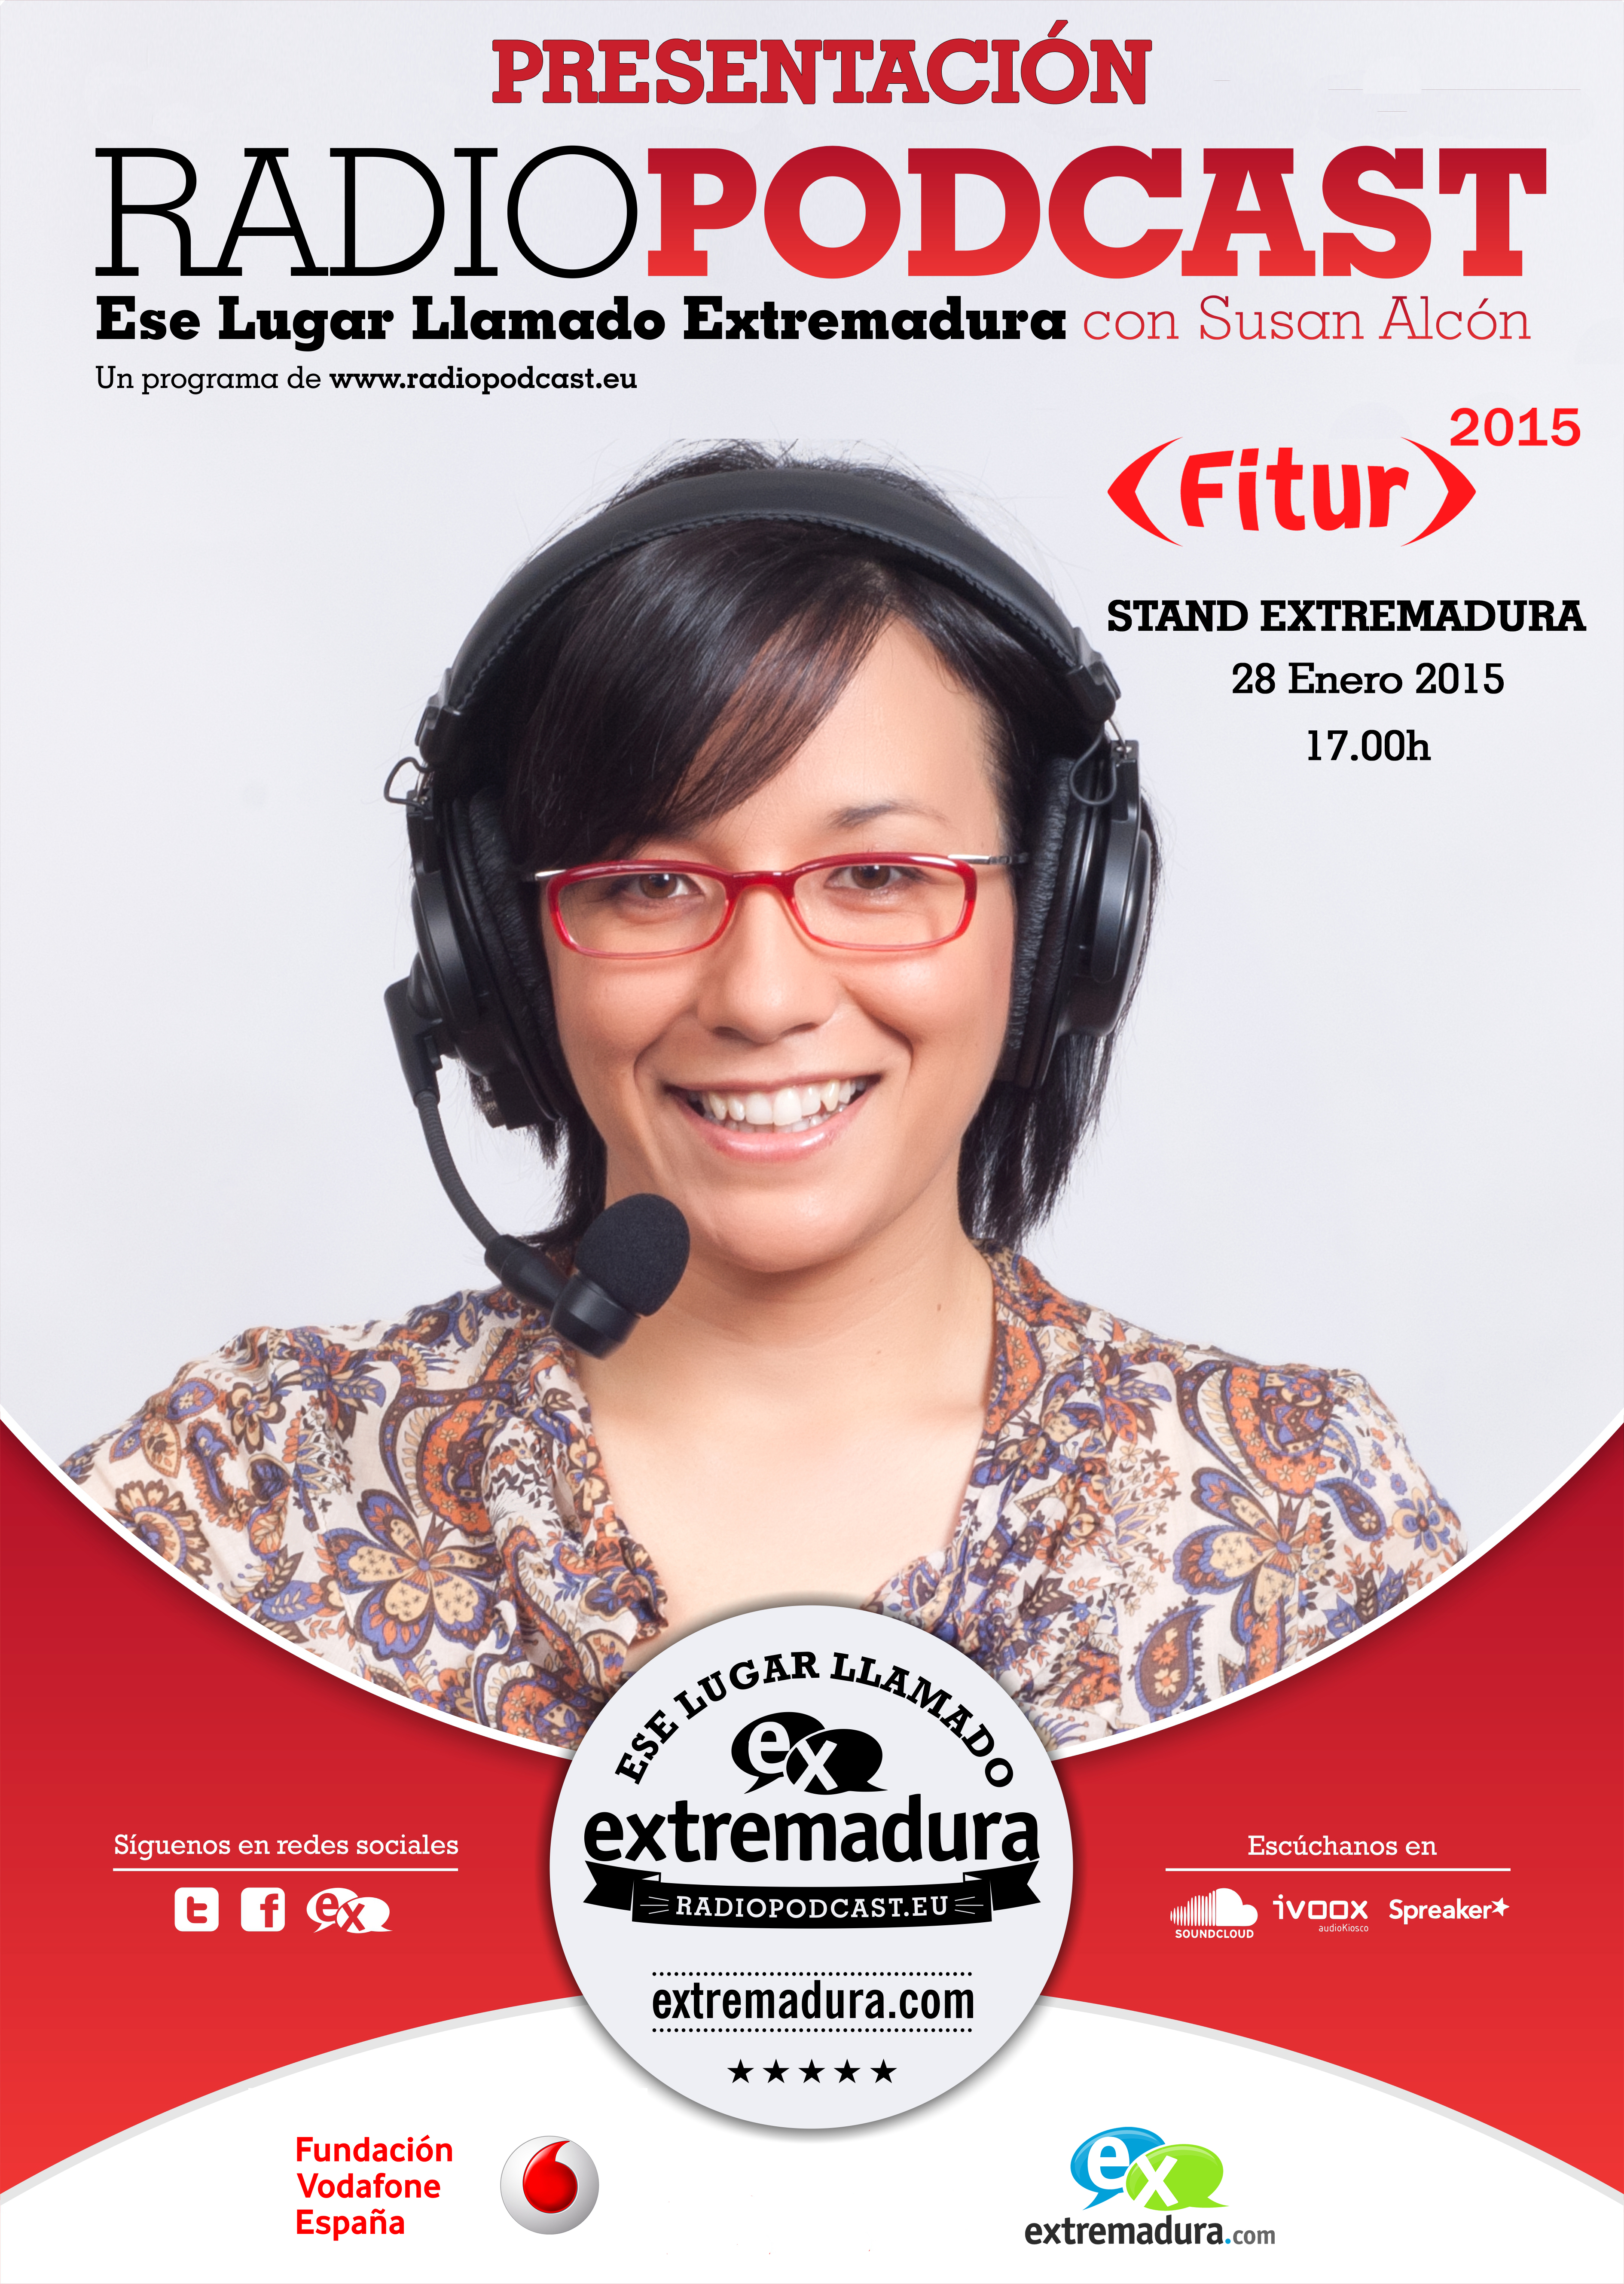 Presentacion del programa de radio podcast ese lugar llamado extremadura en fitur 2015